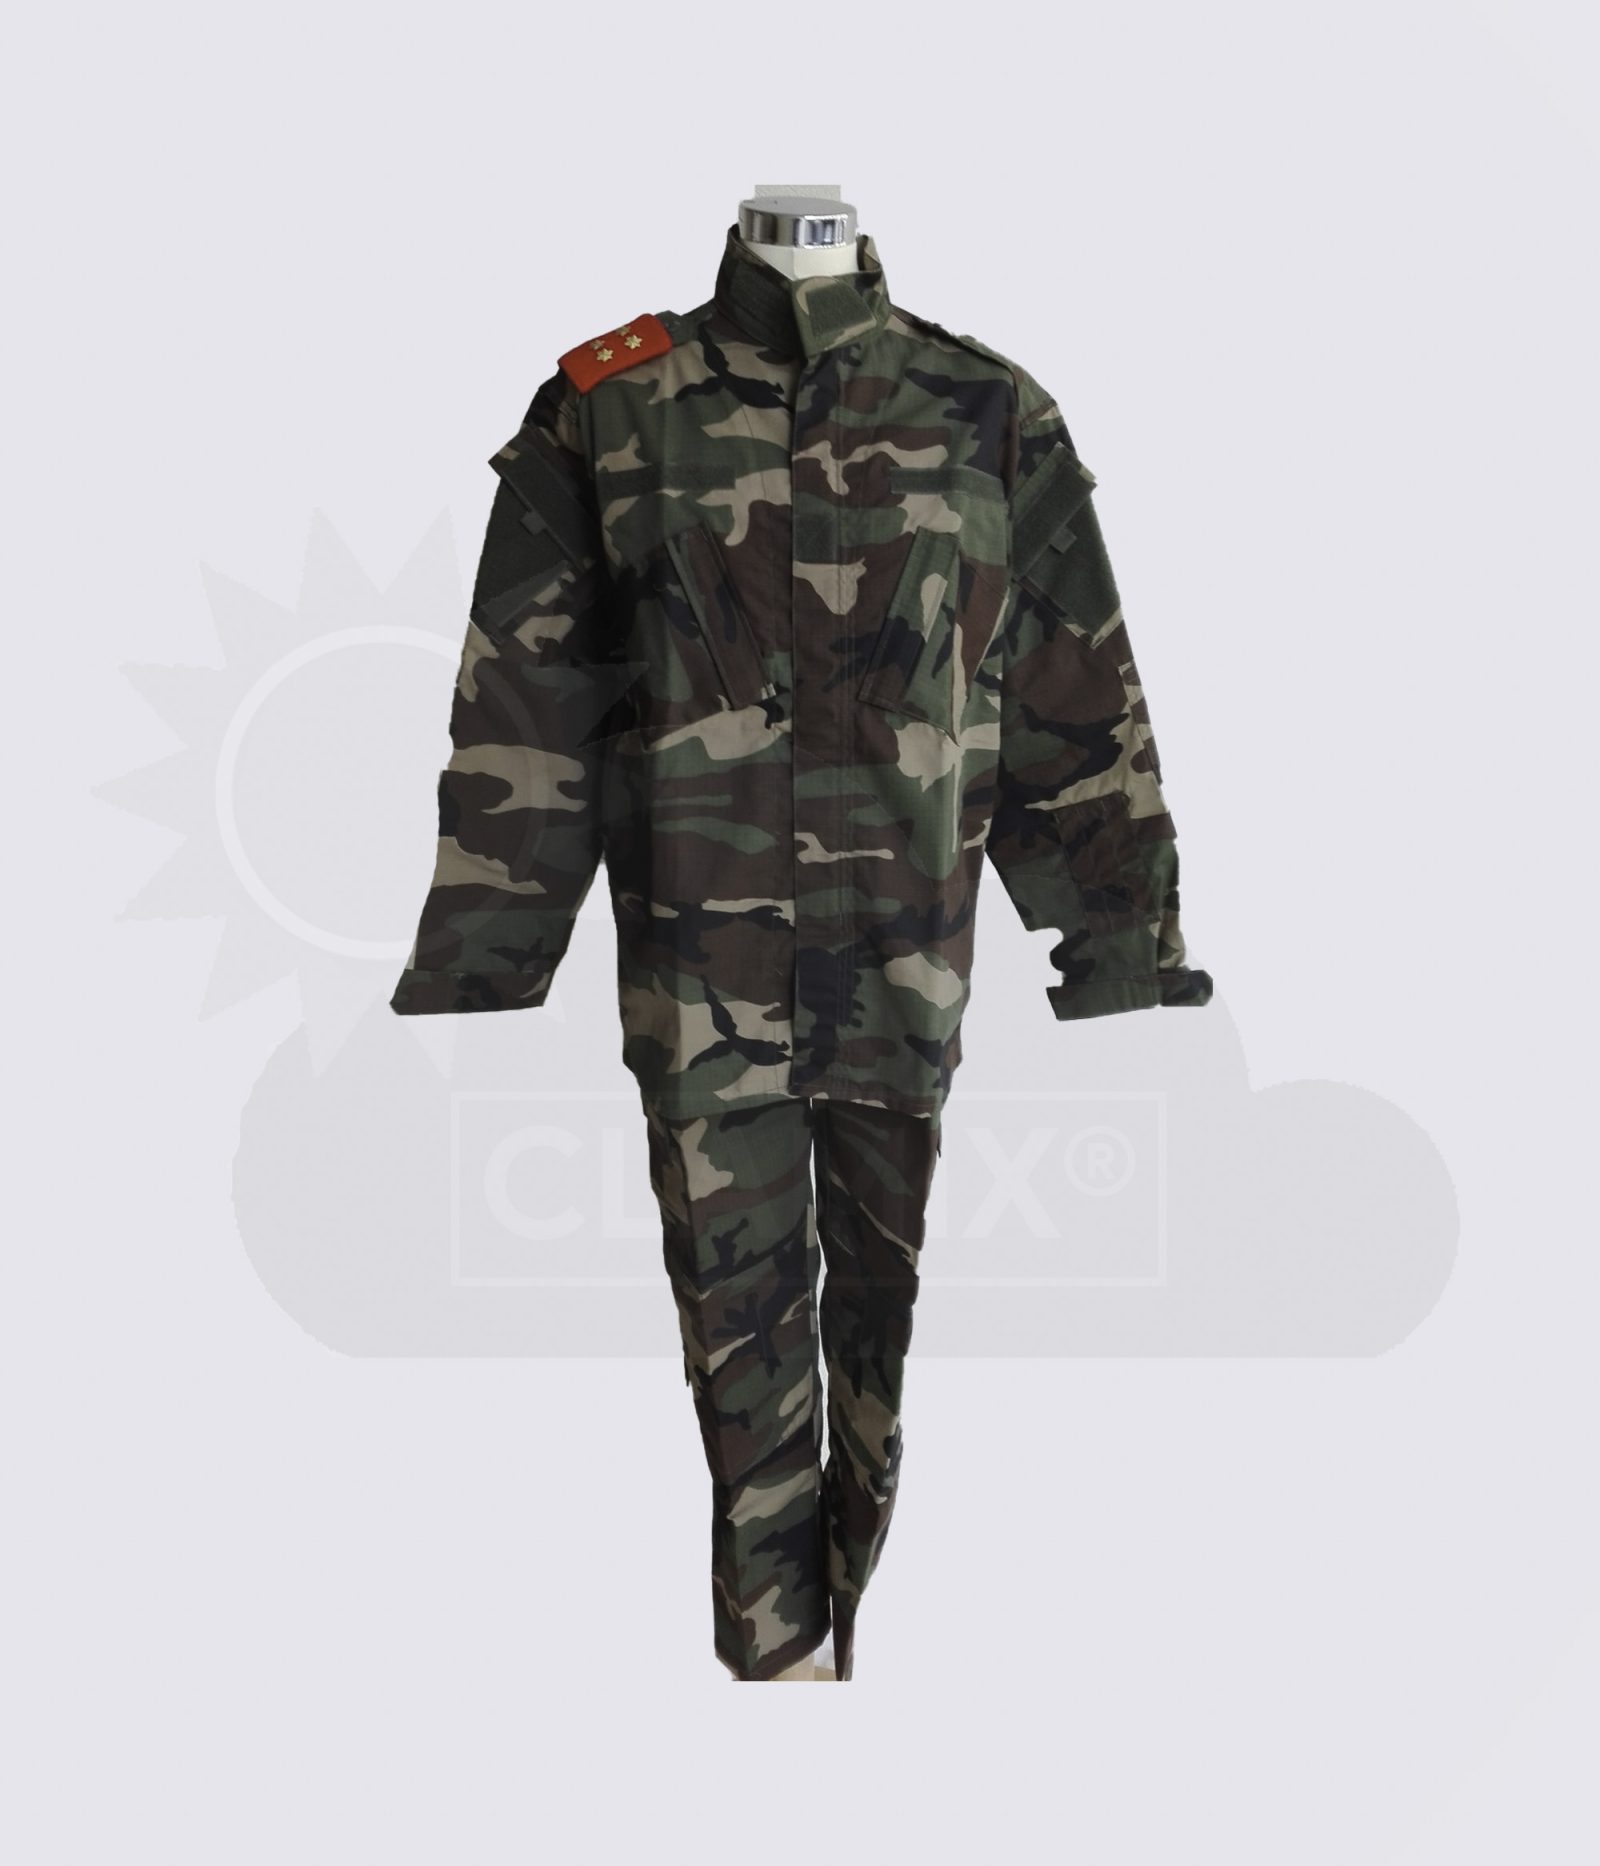 Farda Calças e Dólman modelo Militar Camufladas - R01